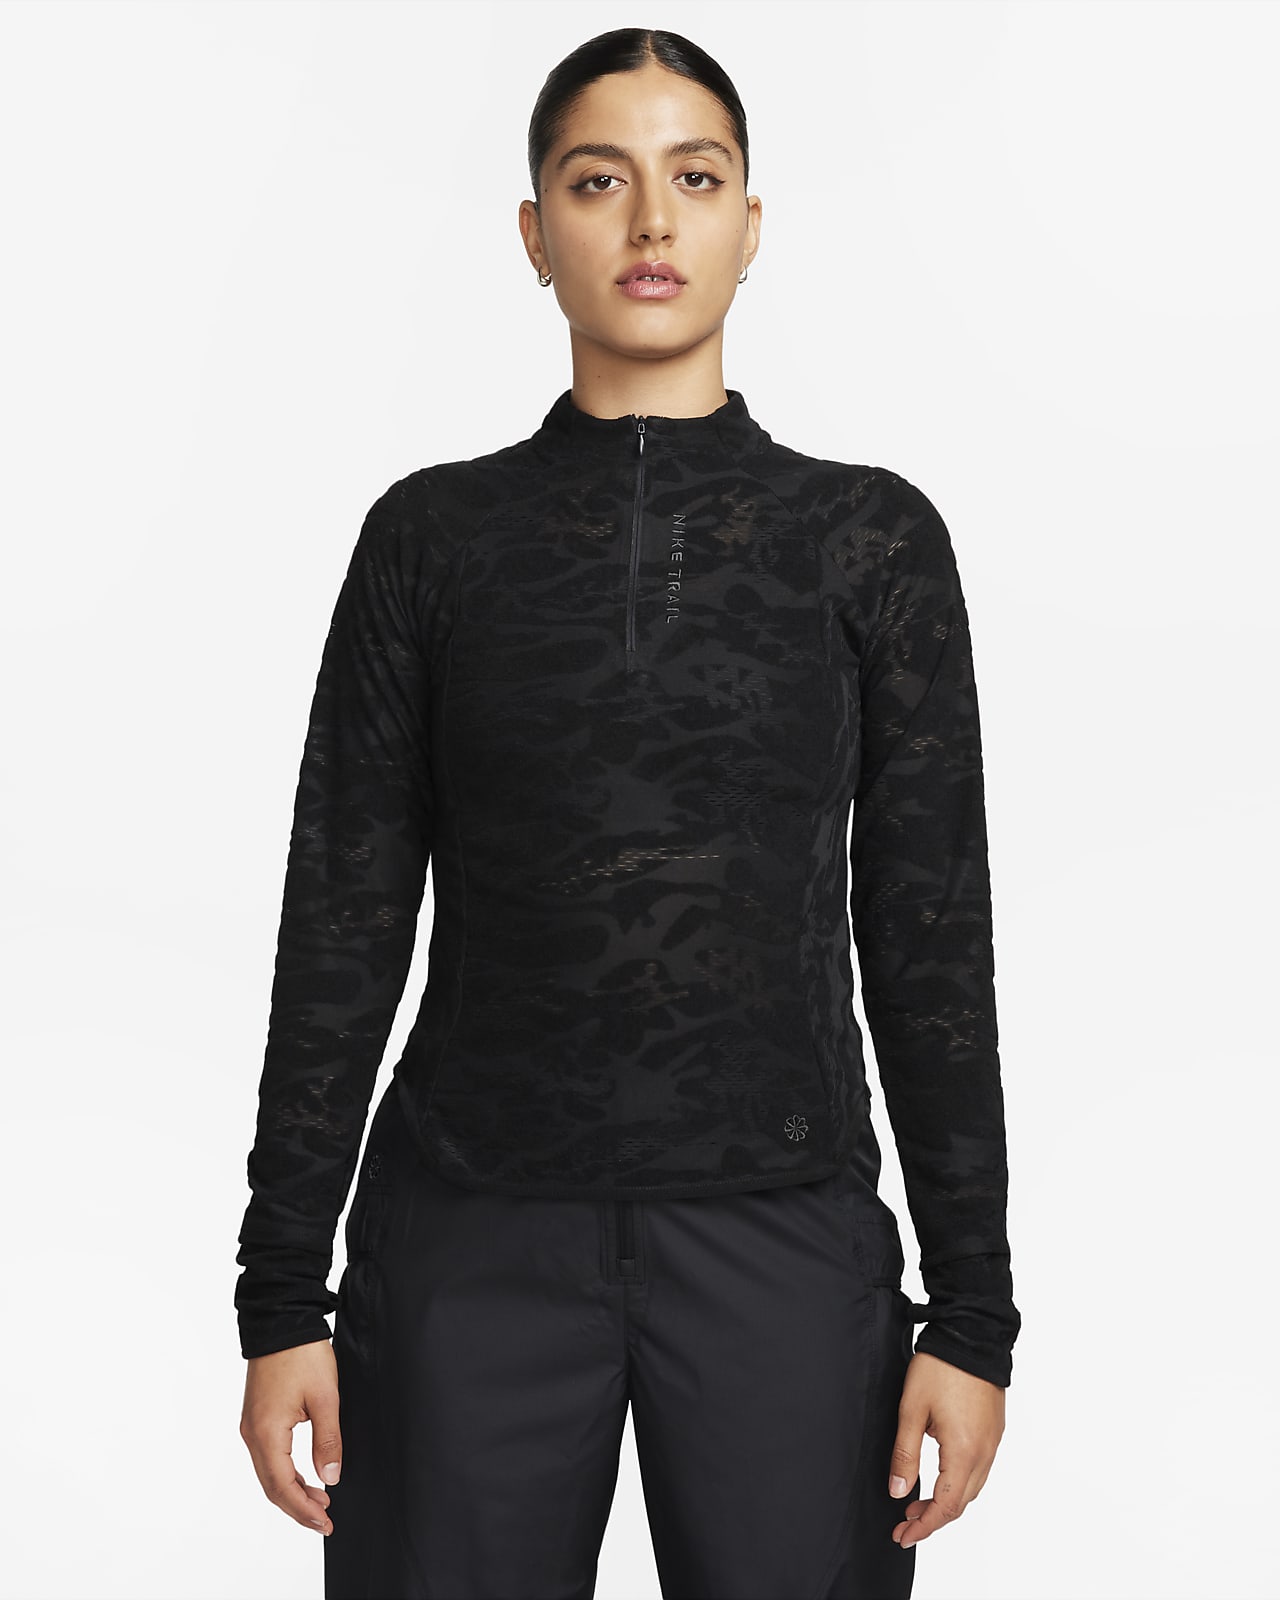 Γυναικεία ενδιάμεση μπλούζα Dri-FIT με φερμουάρ στο 1/4 του μήκους για τρέξιμο σε ανώμαλο δρόμο Nike Trail